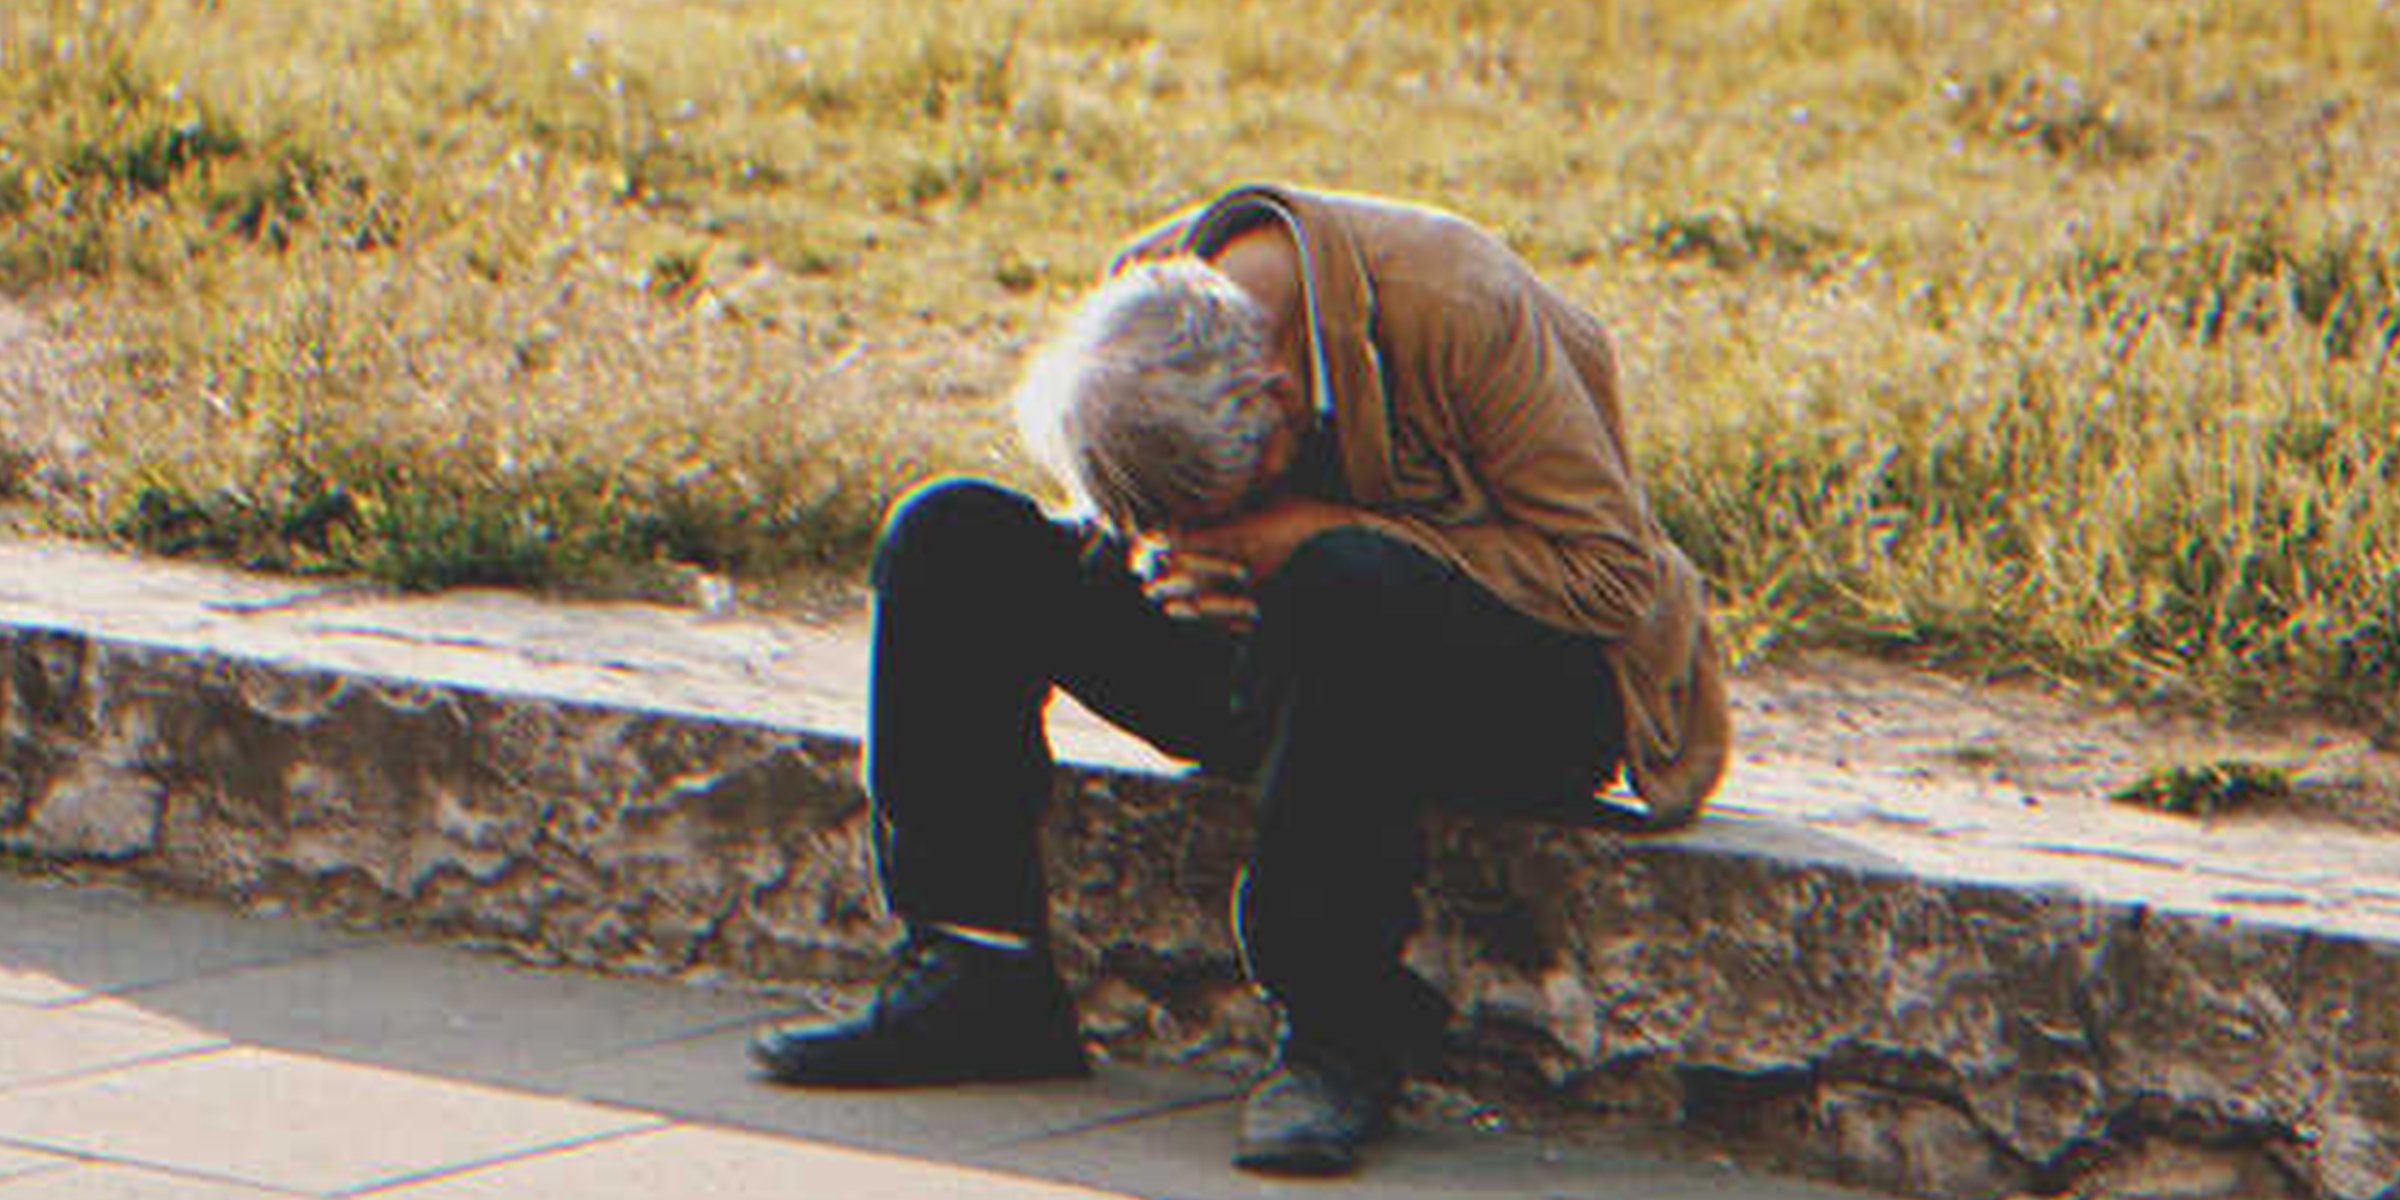 Ein obdachloser Mann sitzt auf dem Gehweg | Quelle: Shutterstock.com